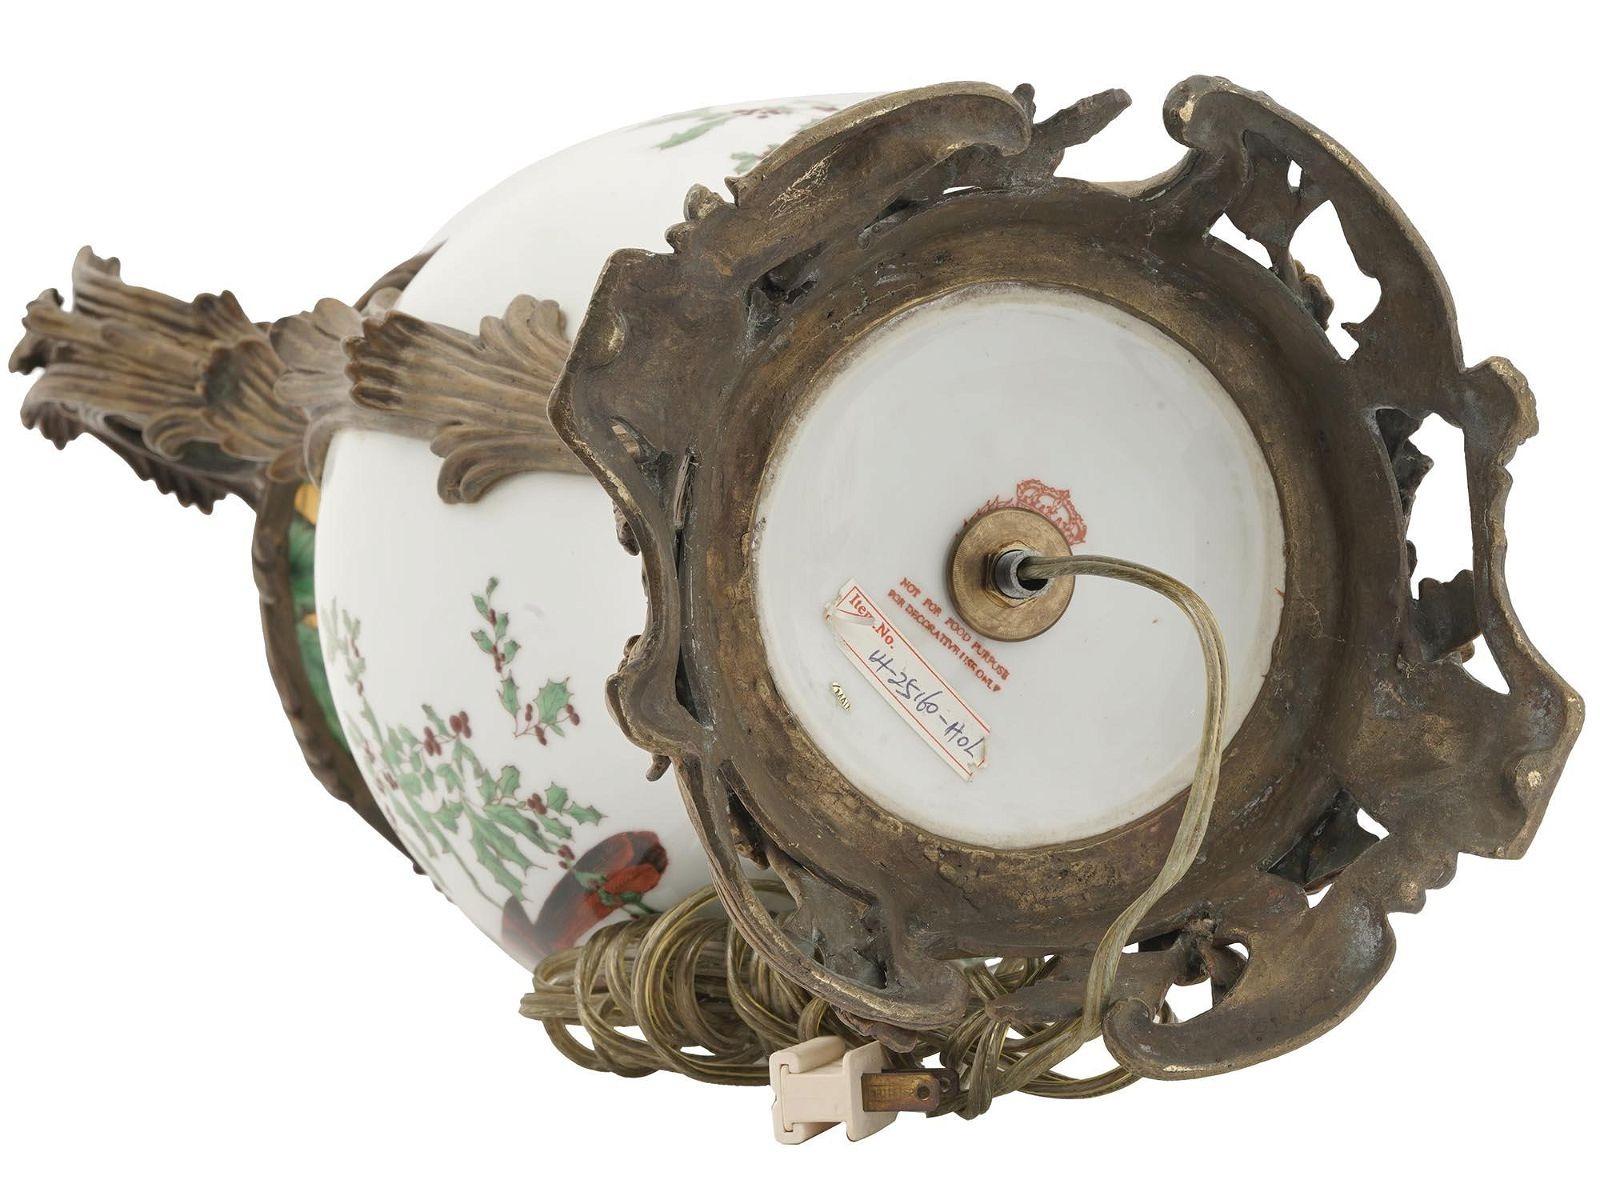 Vase en porcelaine avec des montures en bronze à feuillage élaboré dans le style Louis XV avec des oiseaux finement peints avec des plumes rouges perchés sur des branches de houx avec des baies,  et un motif de feuilles vertes répétées, avec dorure